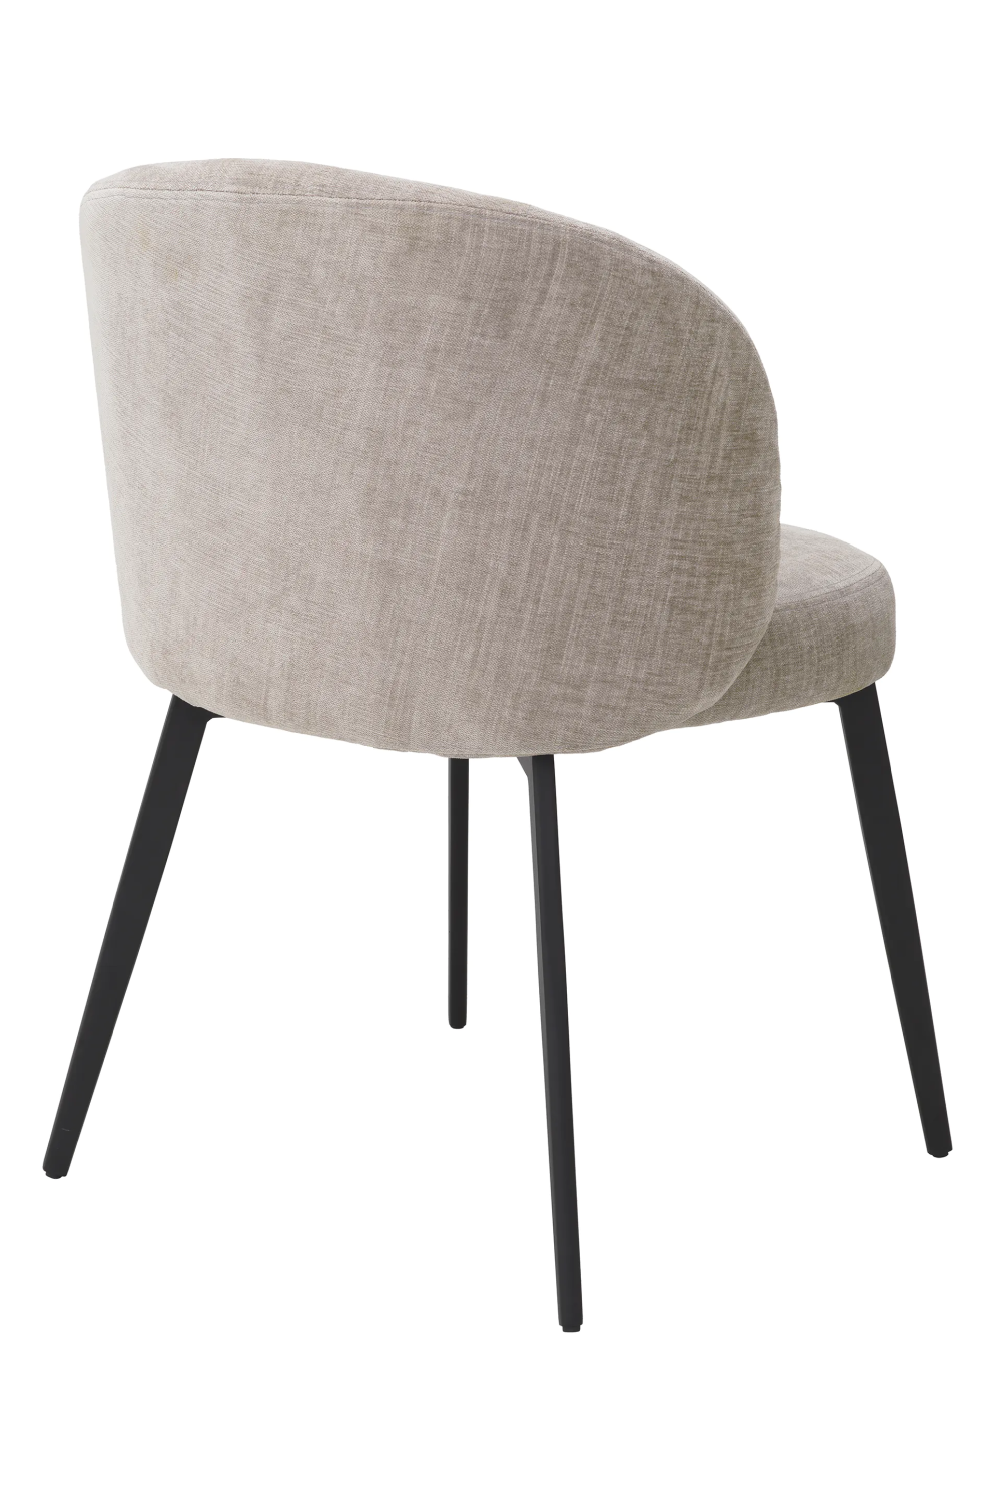 Fabric Dining Chair Set (2) | Eichholtz Lloyd | Oroa.com